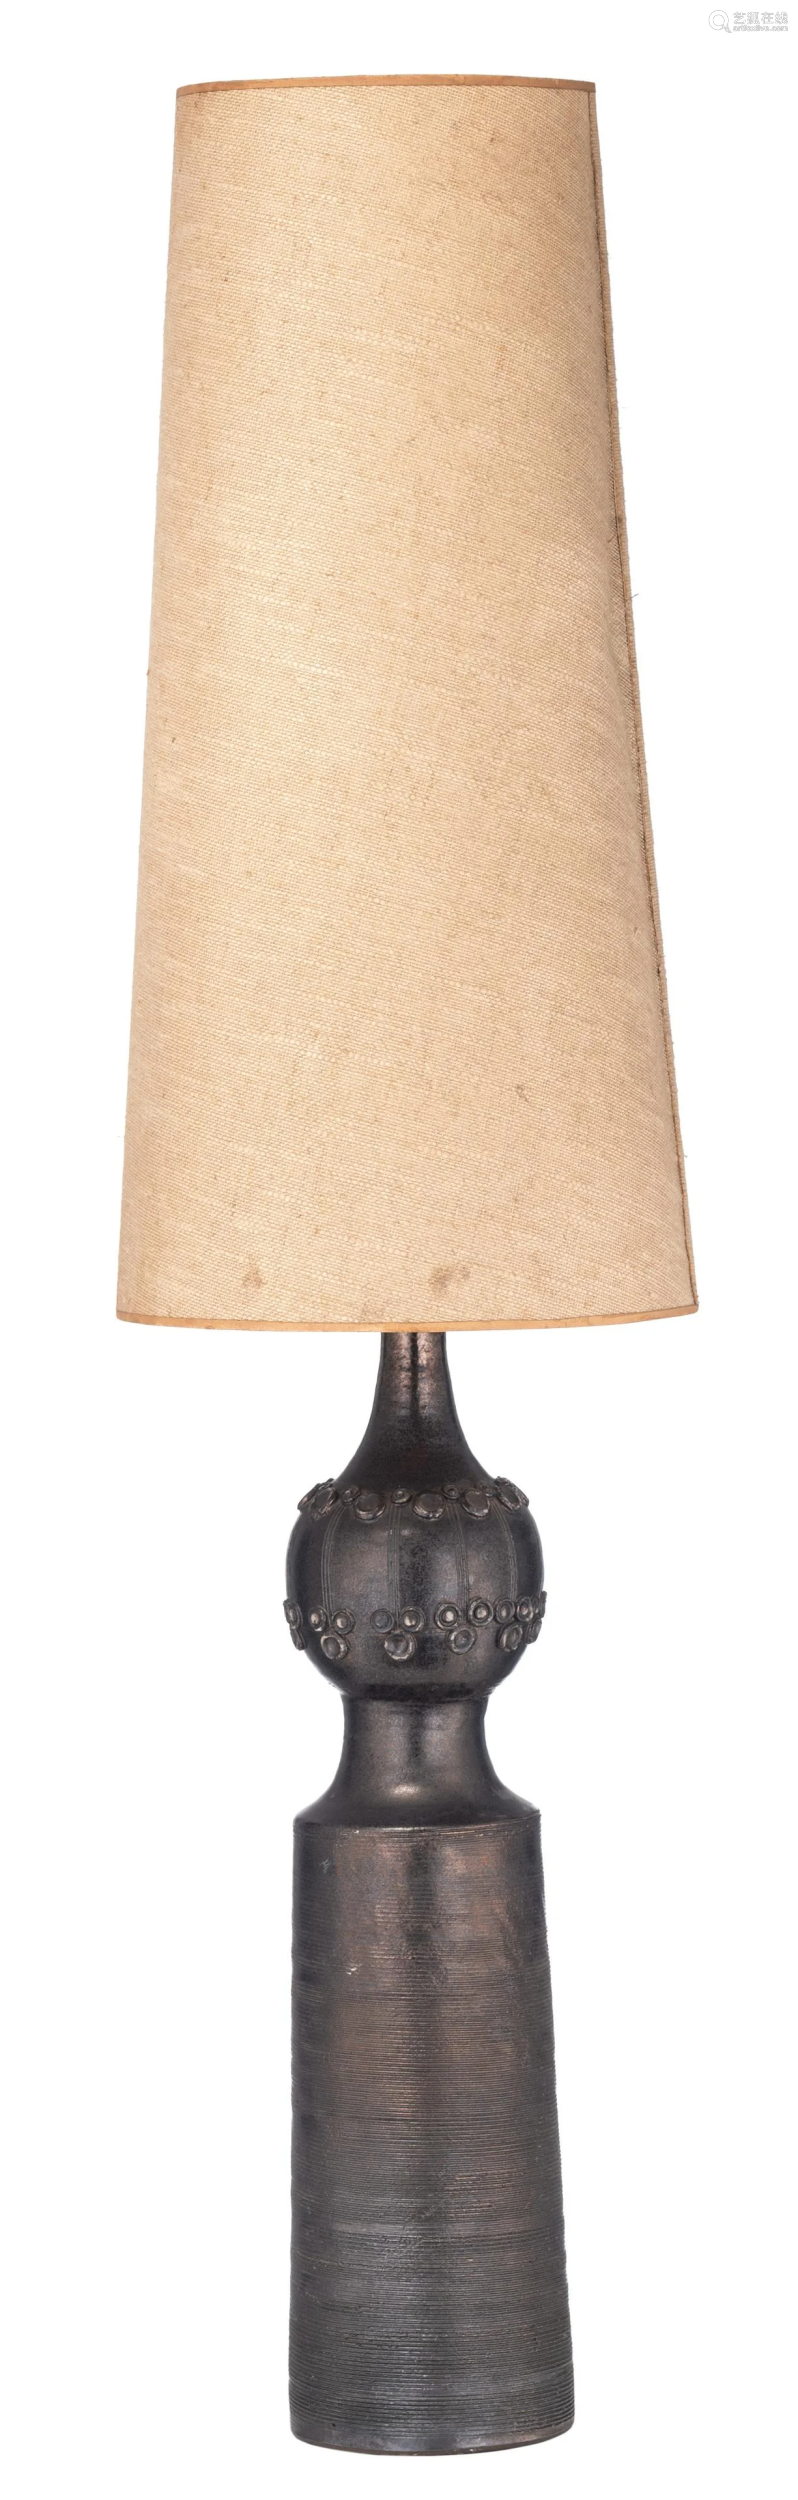 Vintage Black Glazed Ceramic Table Lamp, Vintage Black Ceramic Table Lamps